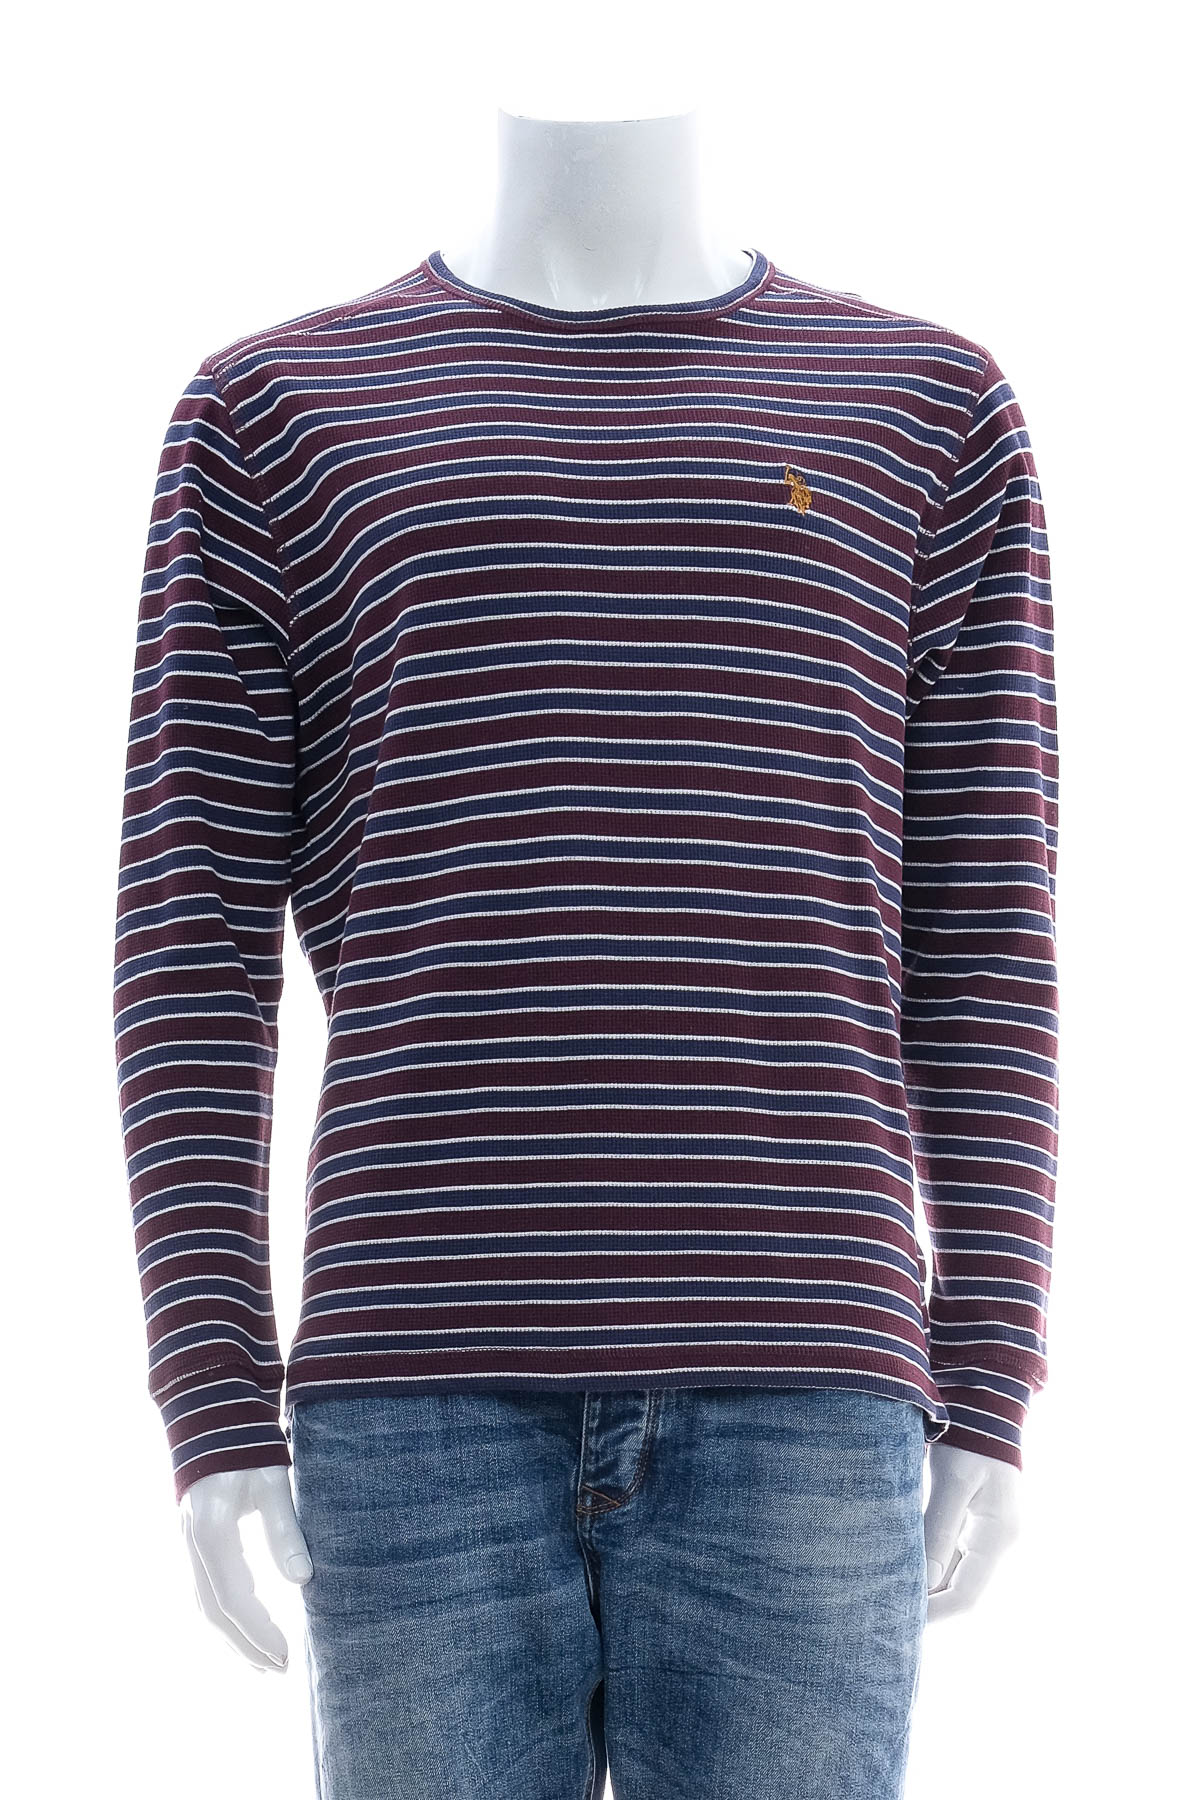 Men's sweater - U.S. Polo ASSN. - 0